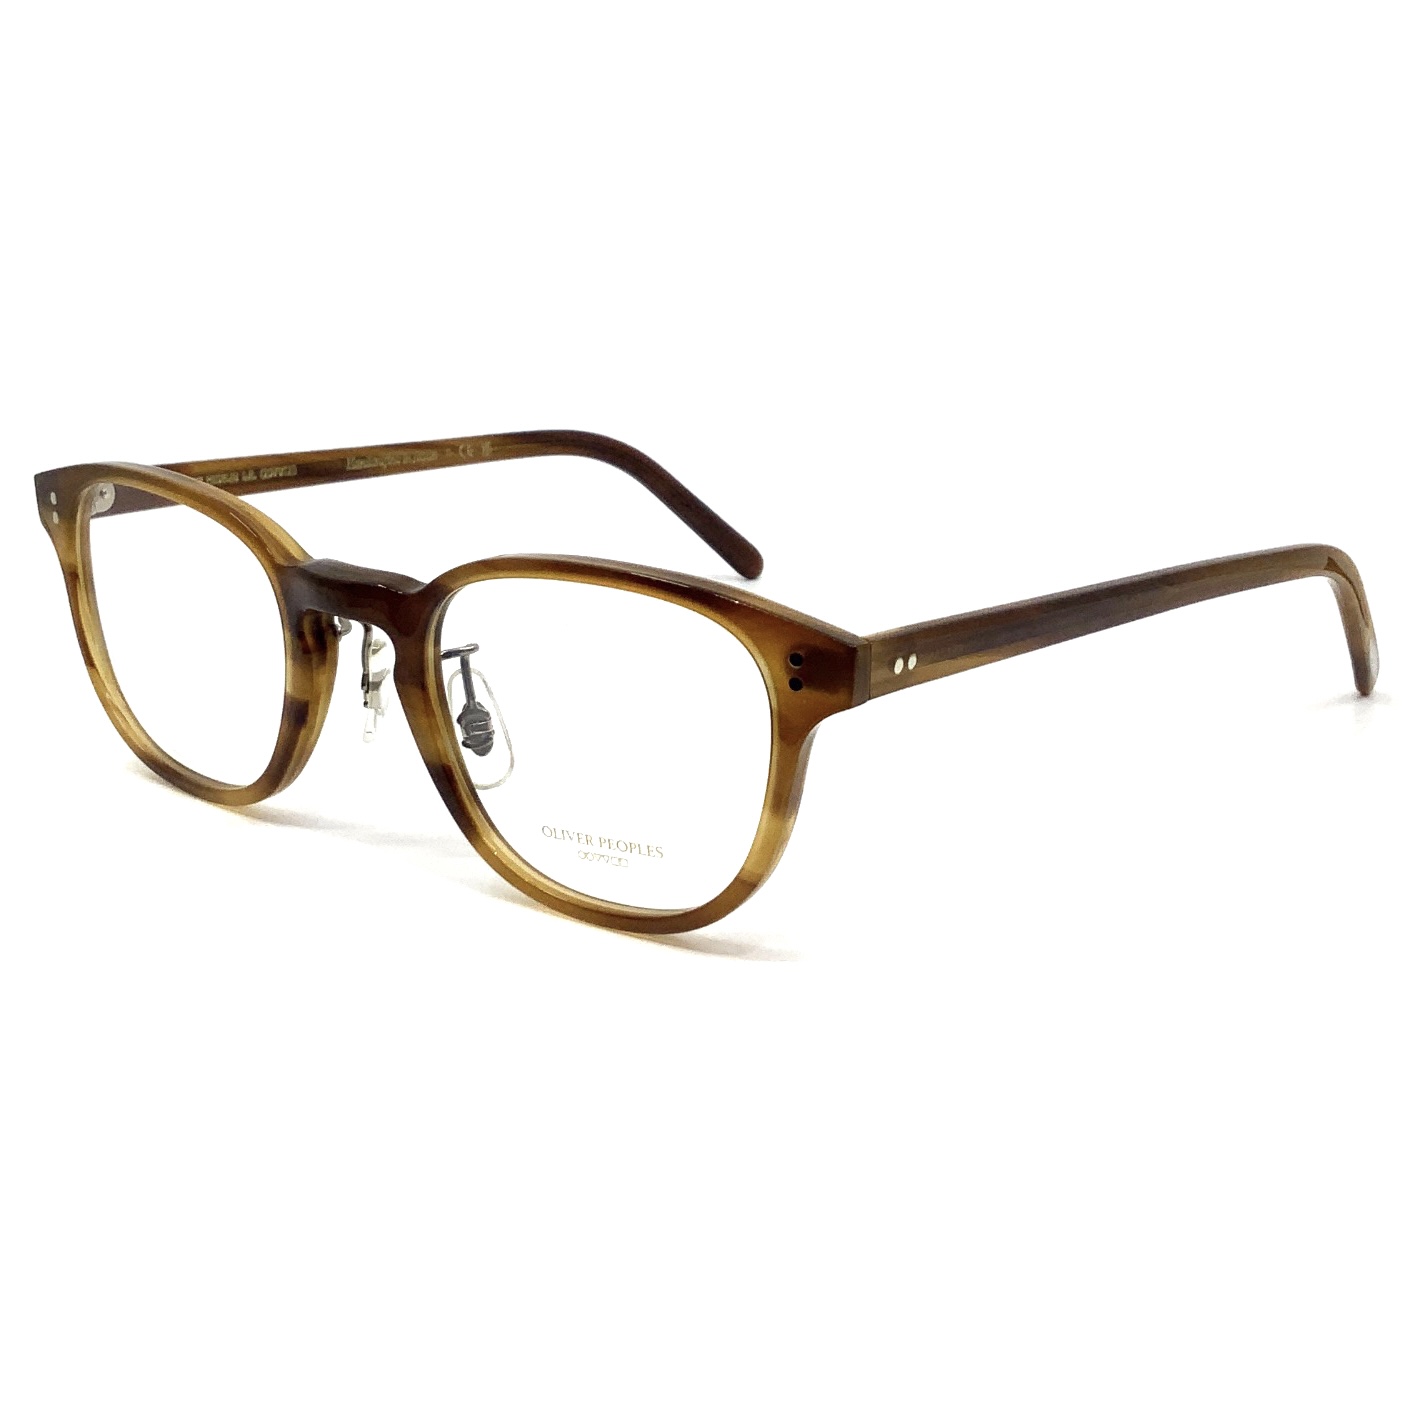 オリバーピープルズ 眼鏡 サイズ45 ブラウン - サングラス/メガネ